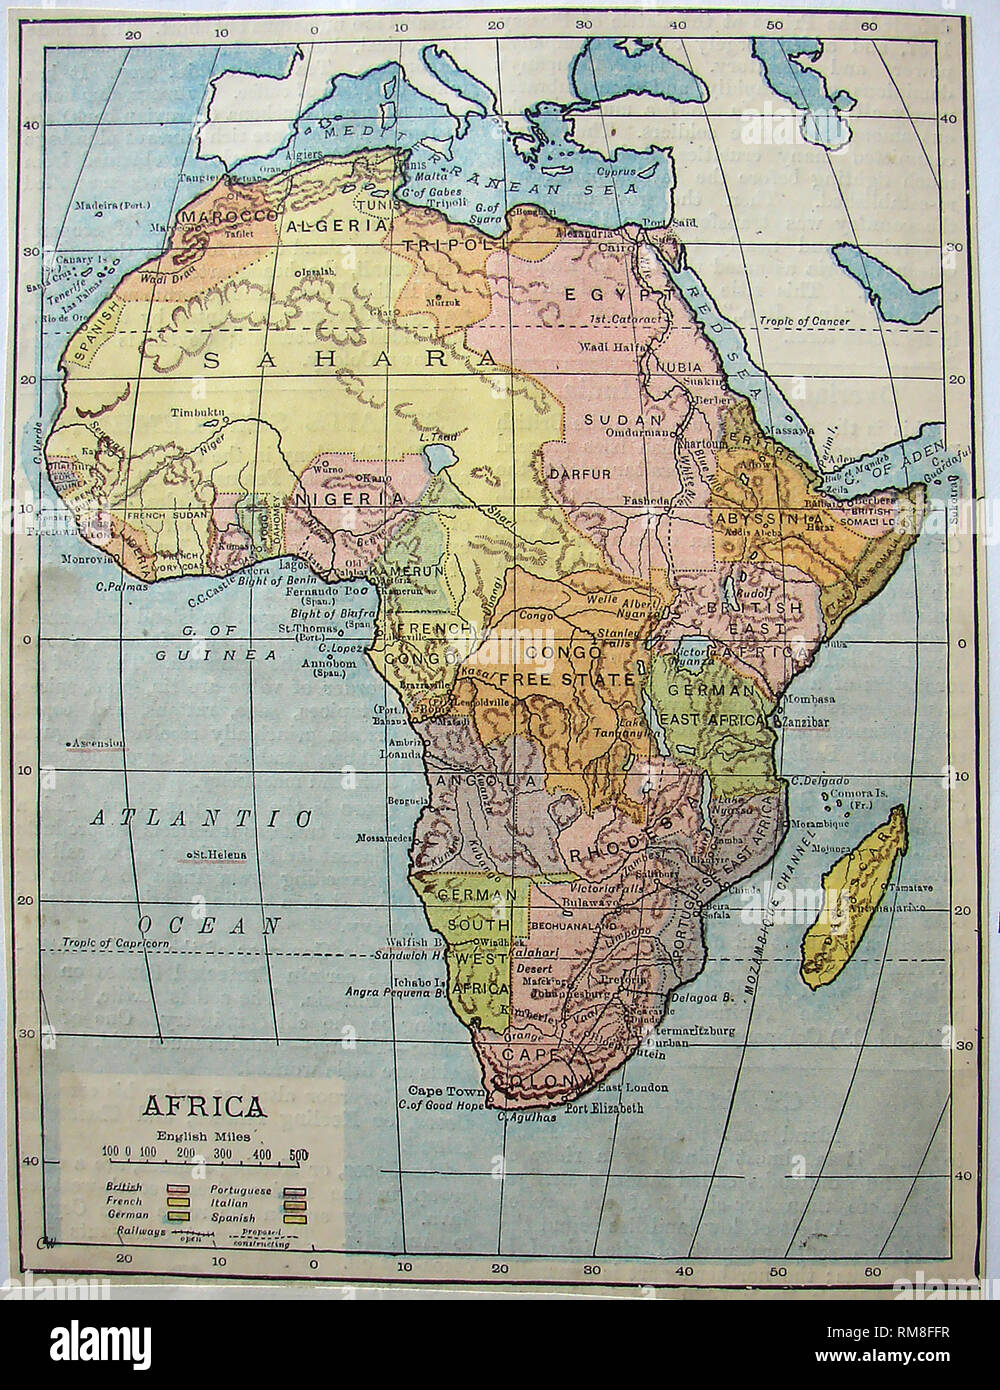 Mappa colorata del continente africano nel 1901 che mostra i nomi dei paesi,confini territori,ecc. Foto Stock